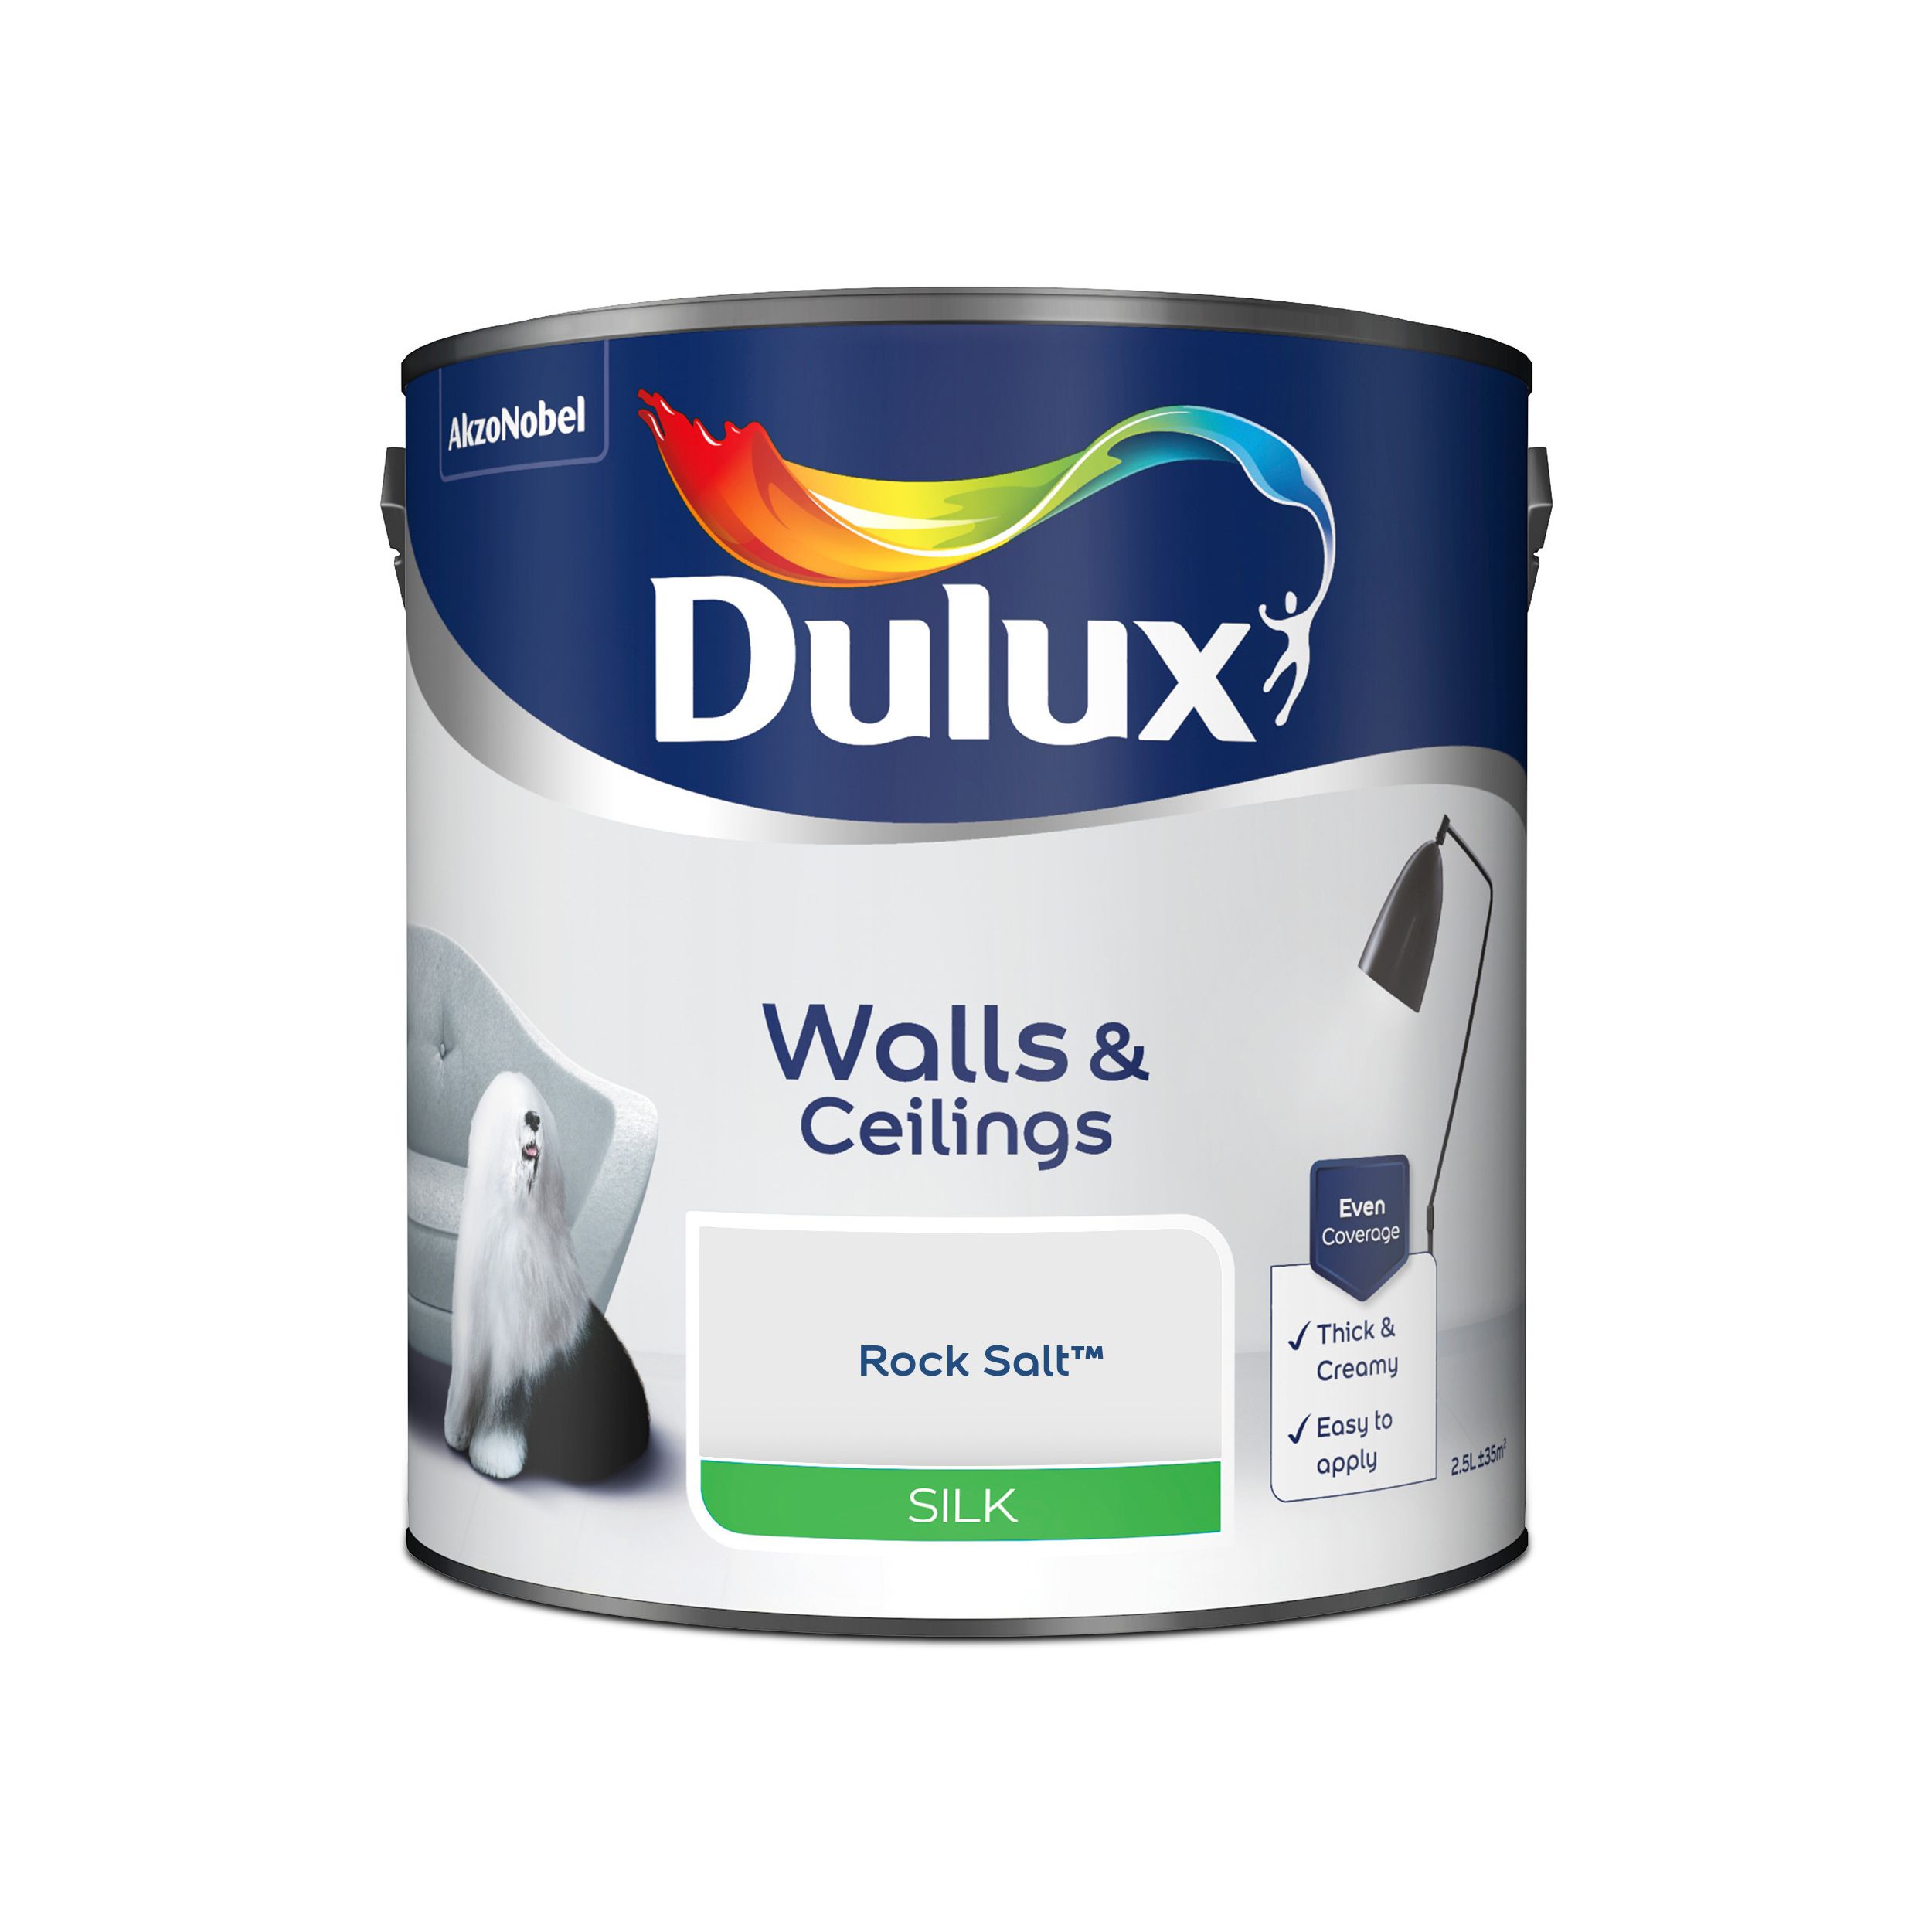 Dulux Walls & ceilings Rock salt Silk Emulsion paint, 2.5L